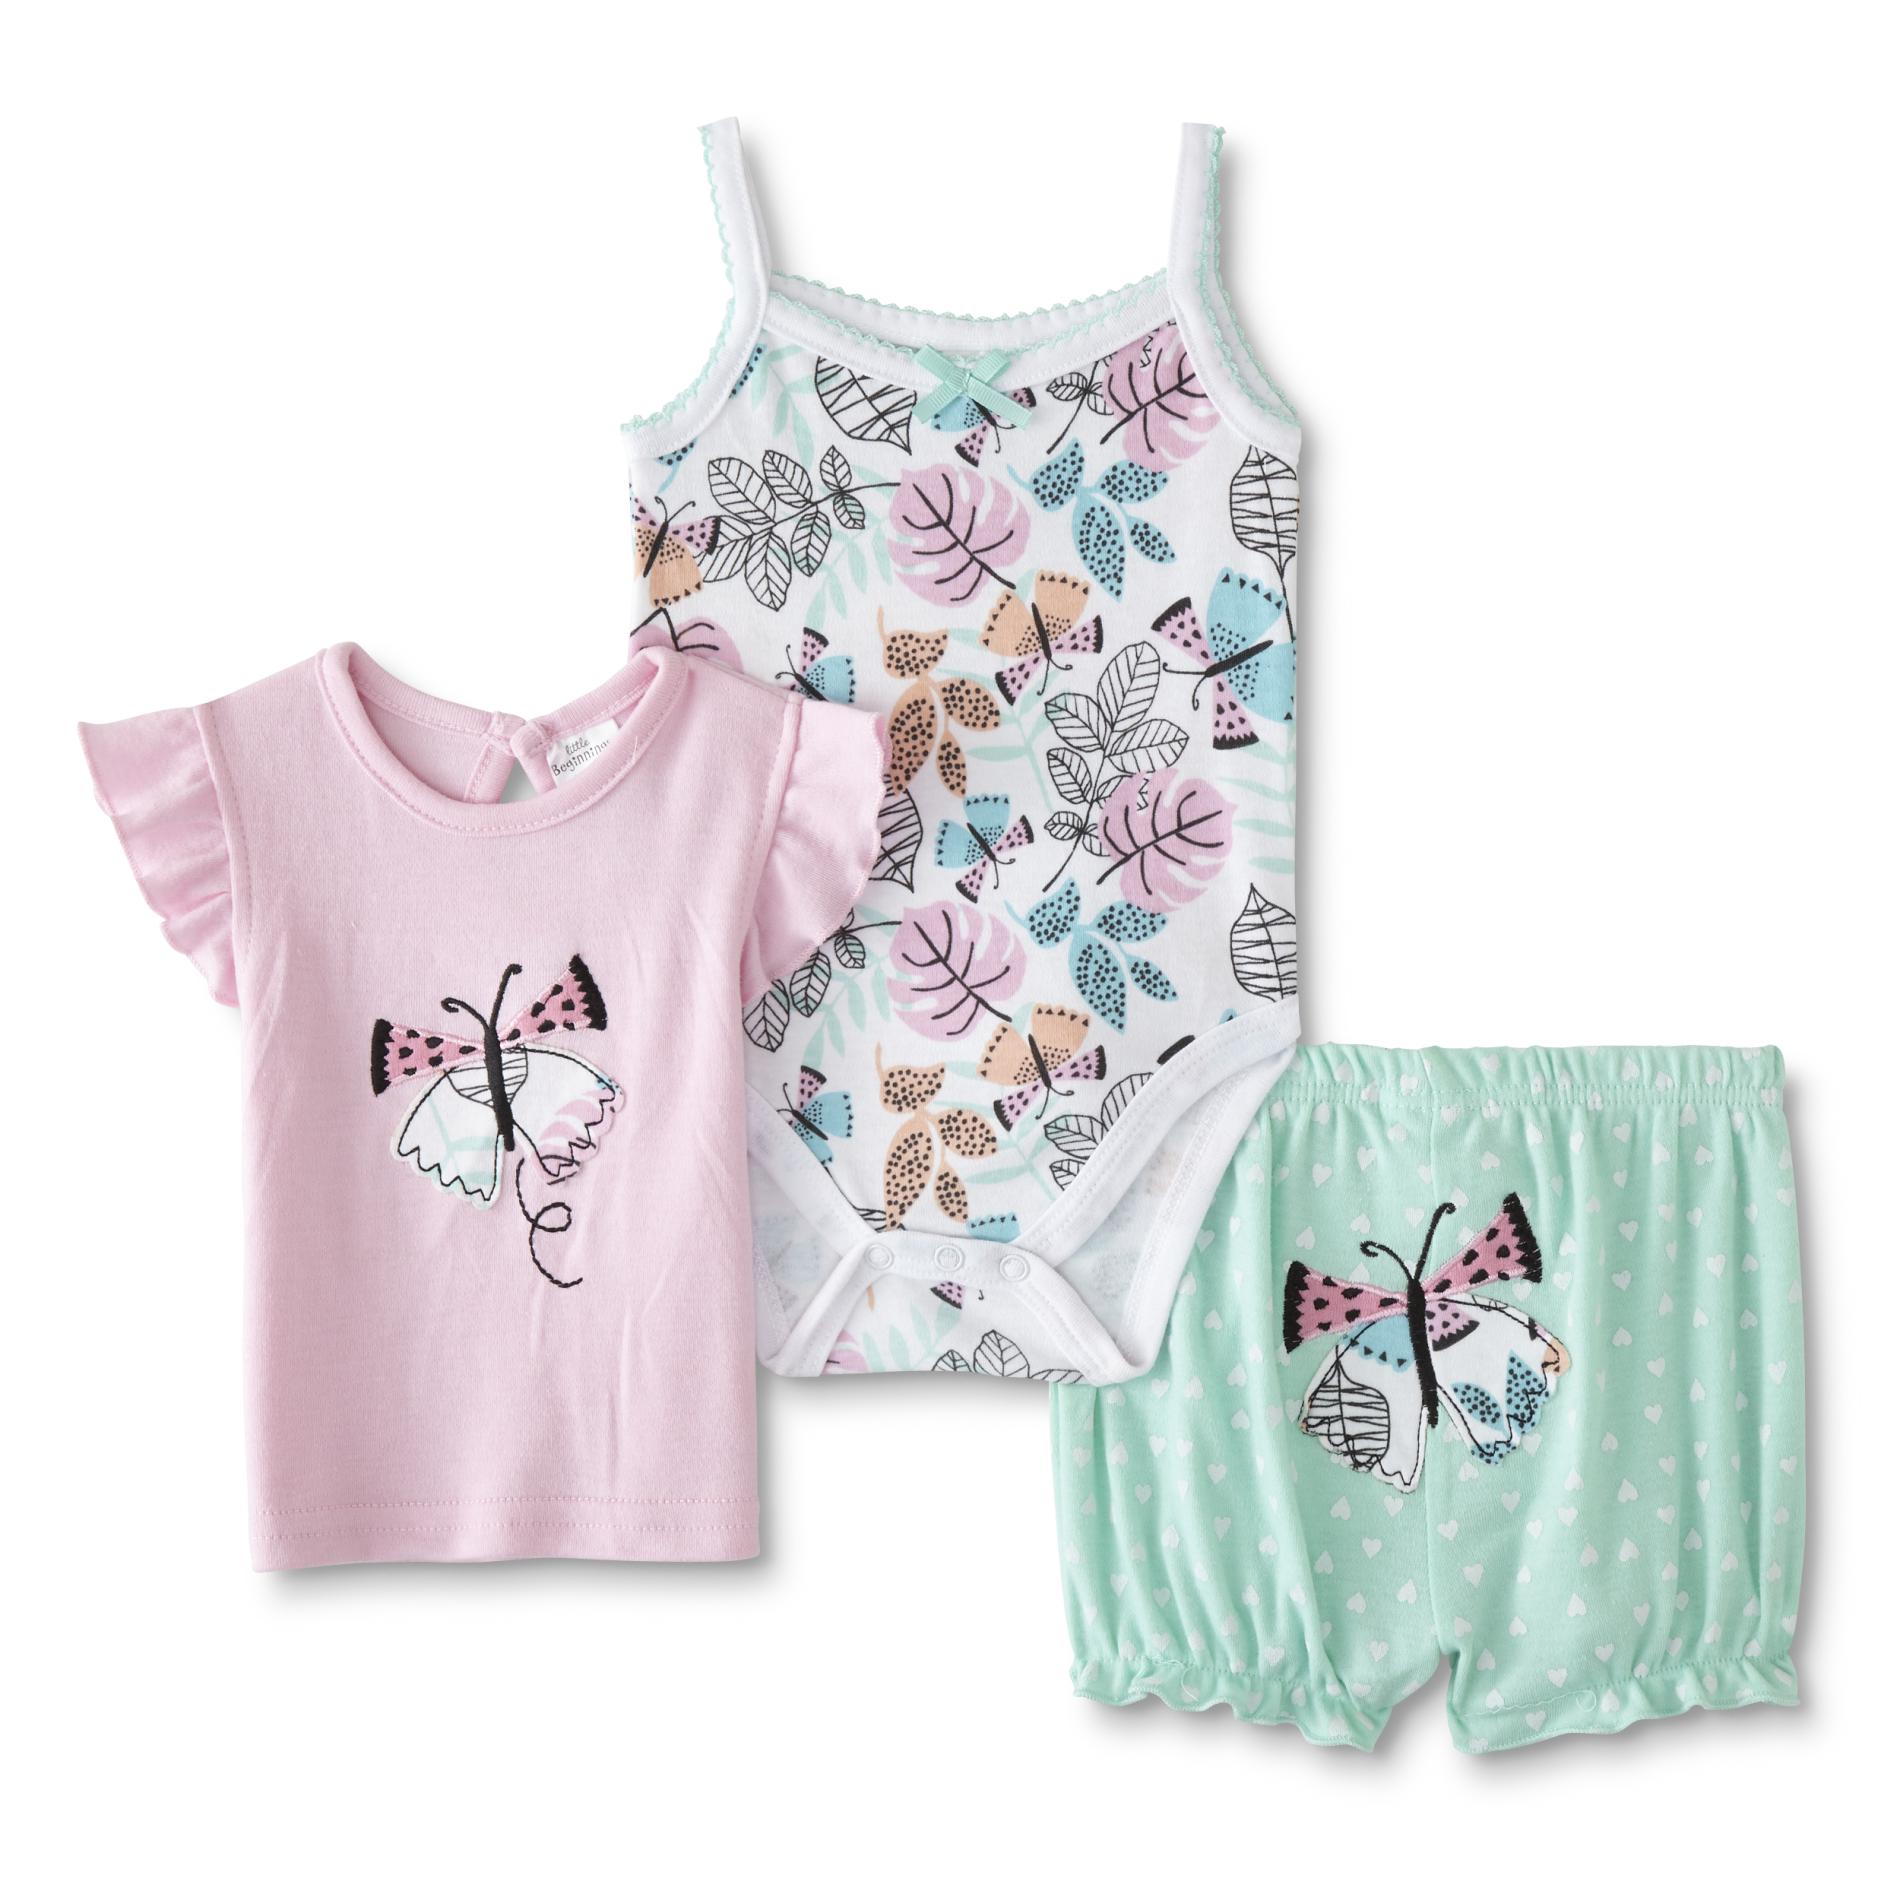 Cudlie Infant Girls' Bodysuit, T-Shirt & Shorts - Butterflies